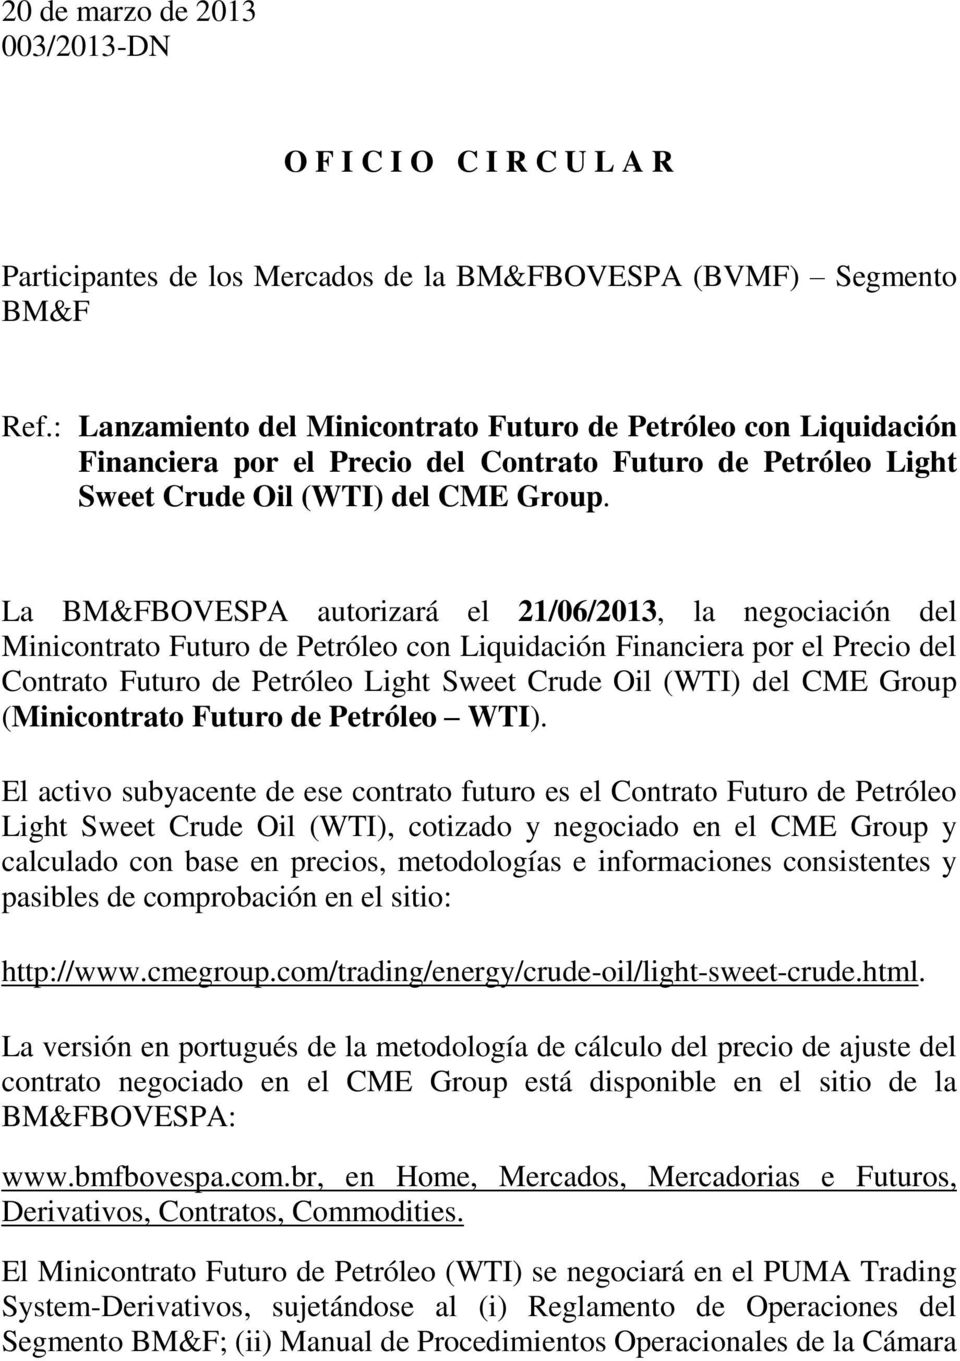 La BM&FBOVESPA autorizará el 21/06/2013, la negociación del Minicontrato Futuro de Petróleo con Liquidación Financiera por el Precio del Contrato Futuro de Petróleo Light Sweet Crude Oil (WTI) del